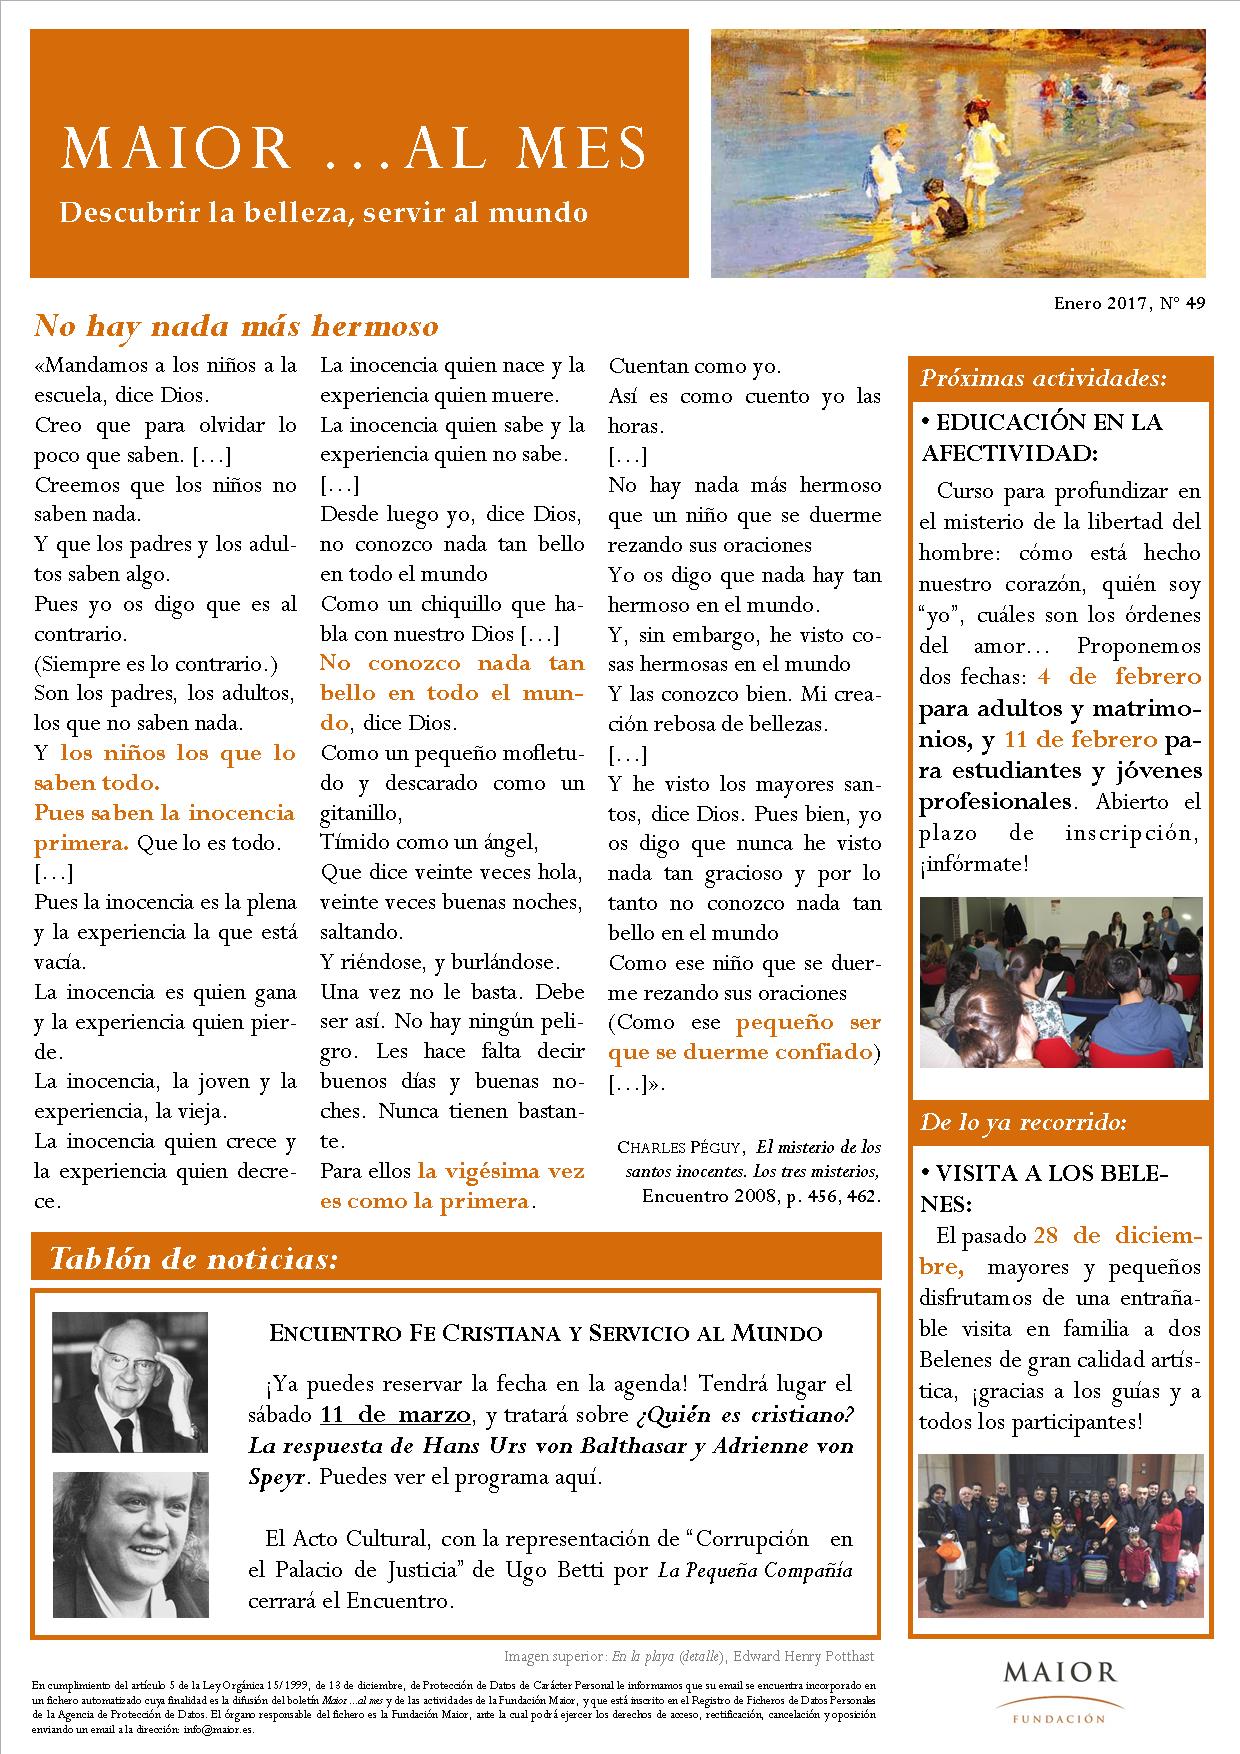 Boletín mensual de noticias y actividades de la Fundación Maior. Edición de enero 2017